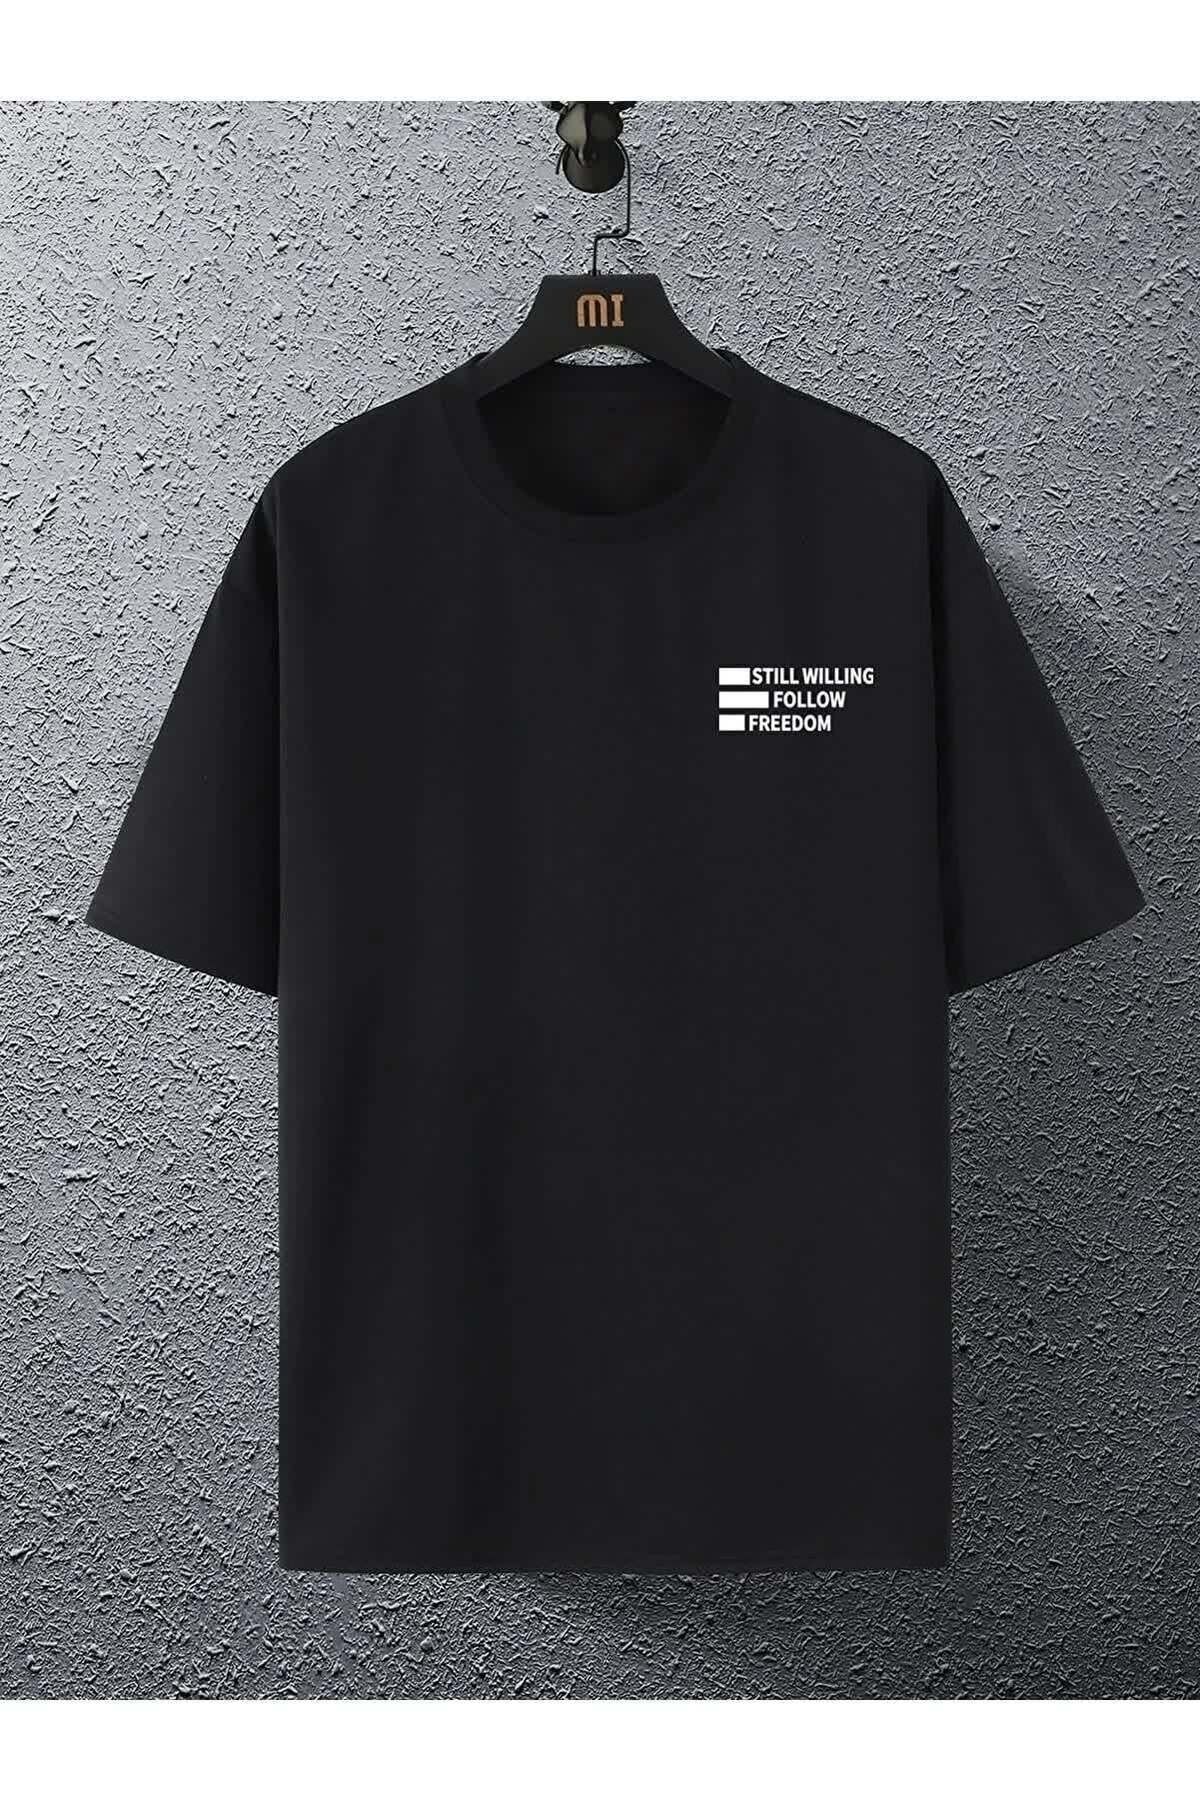 Genel Markalar Unisex Beyaz Oversiz Still Follow Freedom Baskılı T-shirt